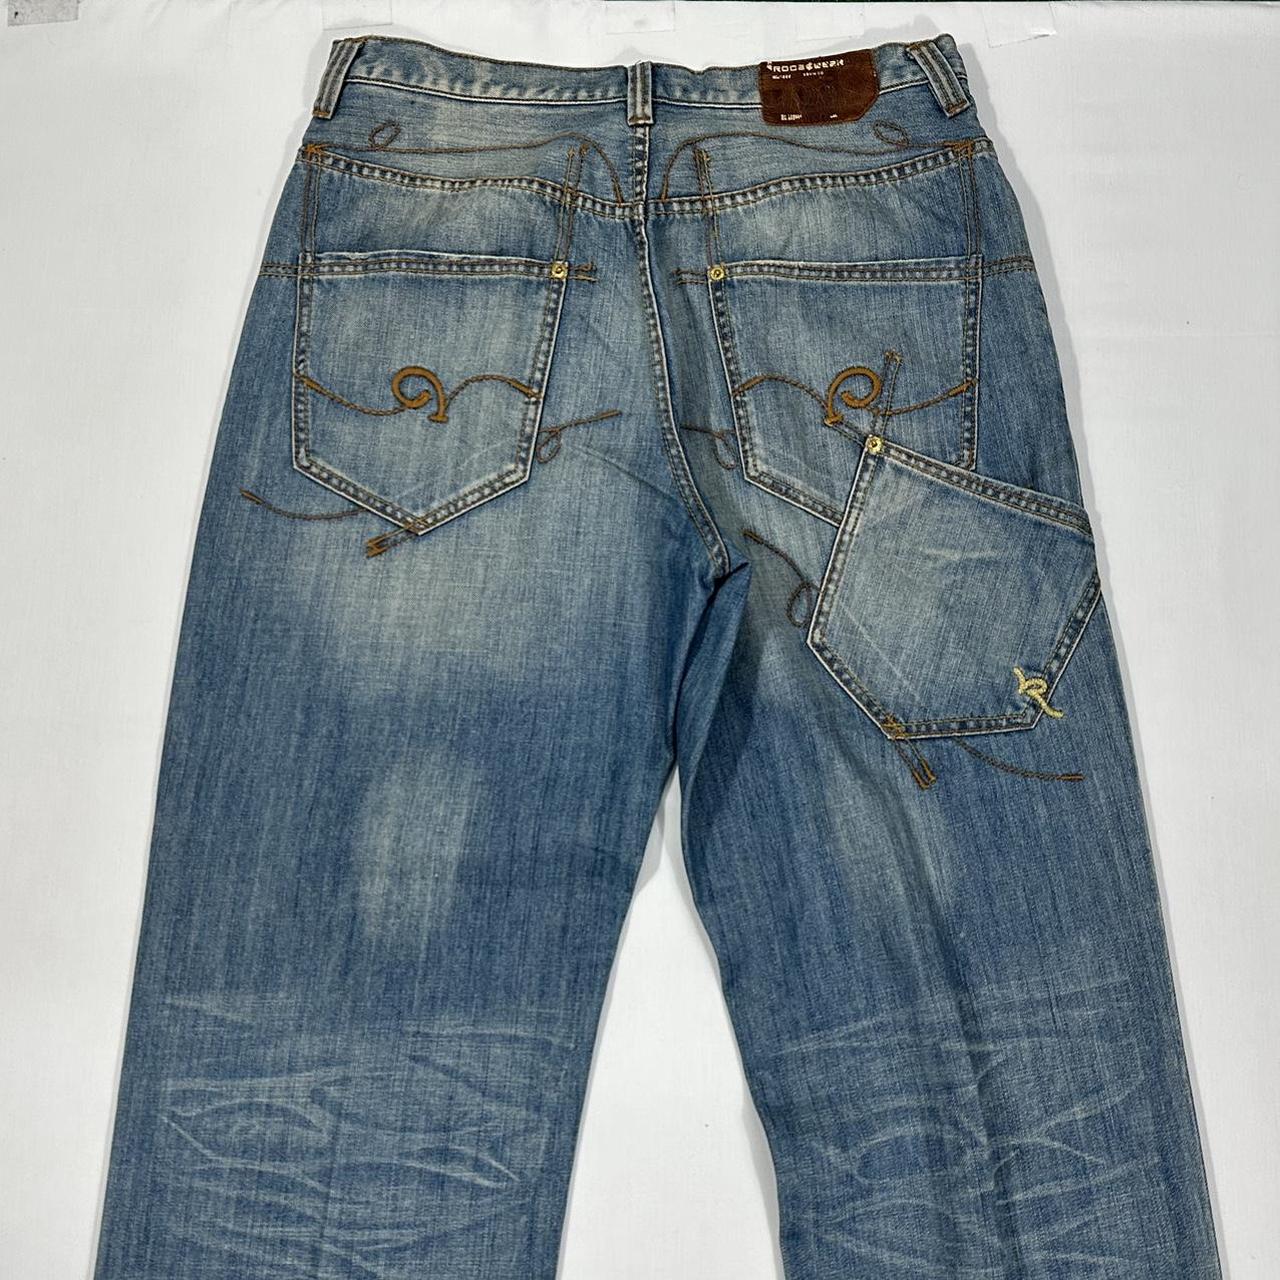 Vintage Y2K Rocawear Jeans Grunge Streetwear Hip... - Depop